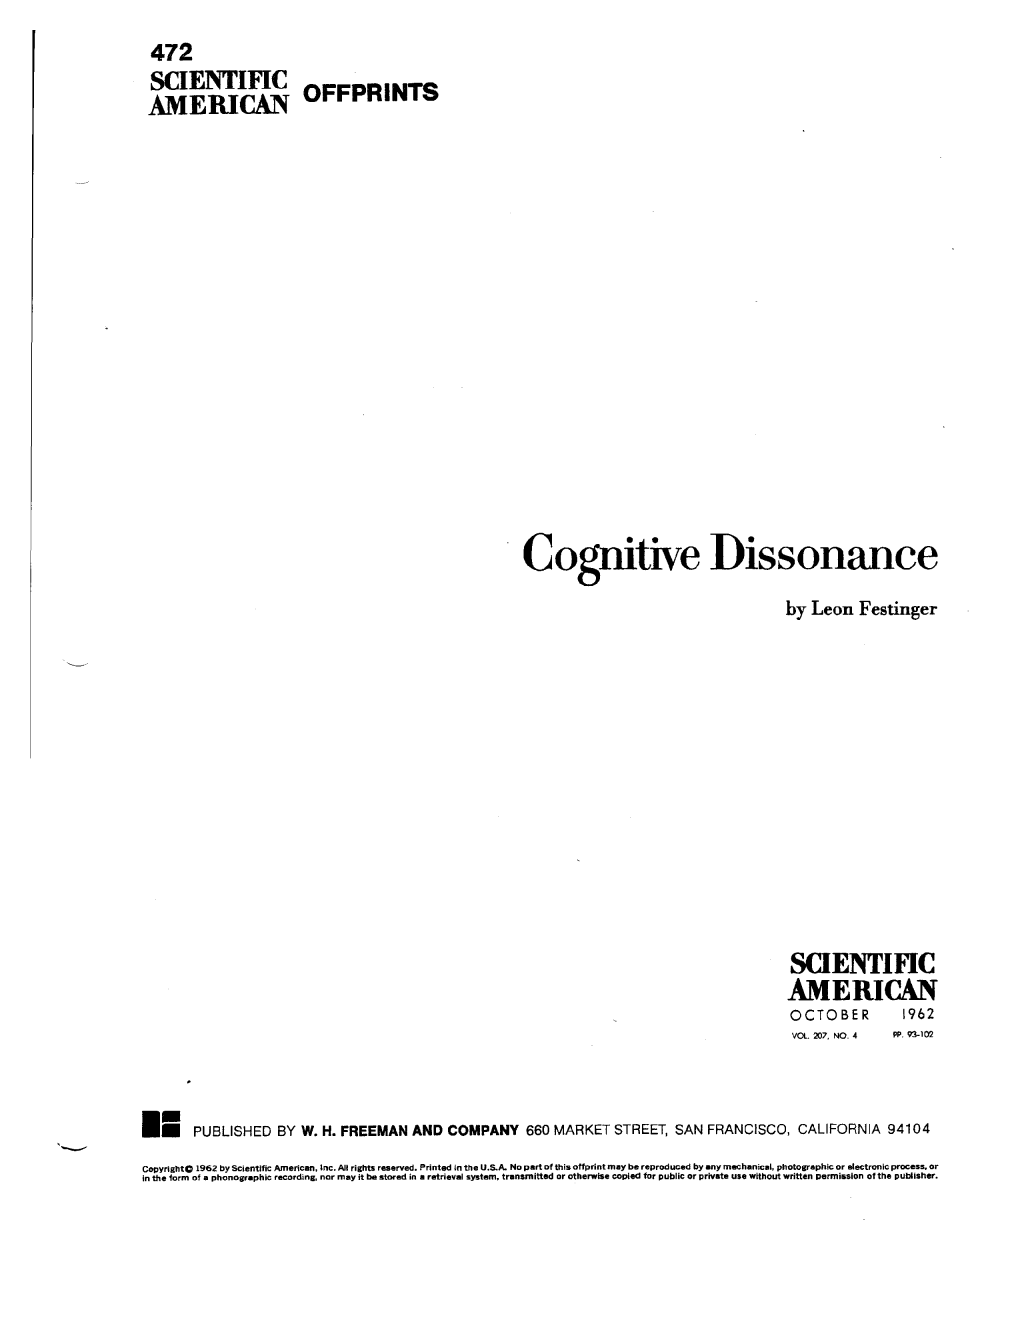 Cognitive Dissonance by Leon Festinger